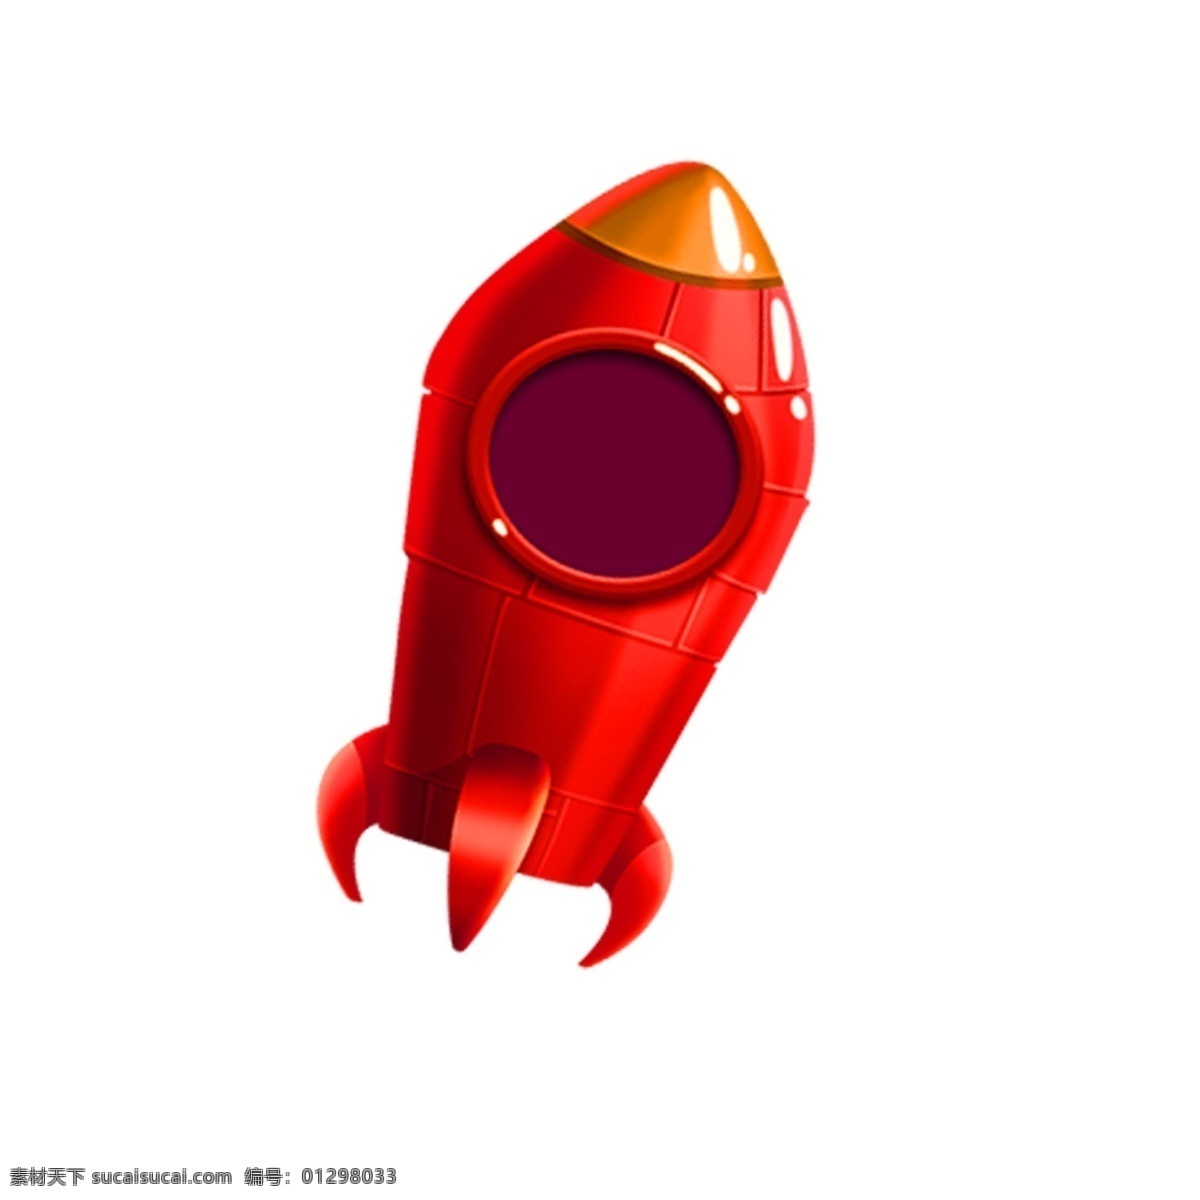 红色火箭 红色 火箭 卡通